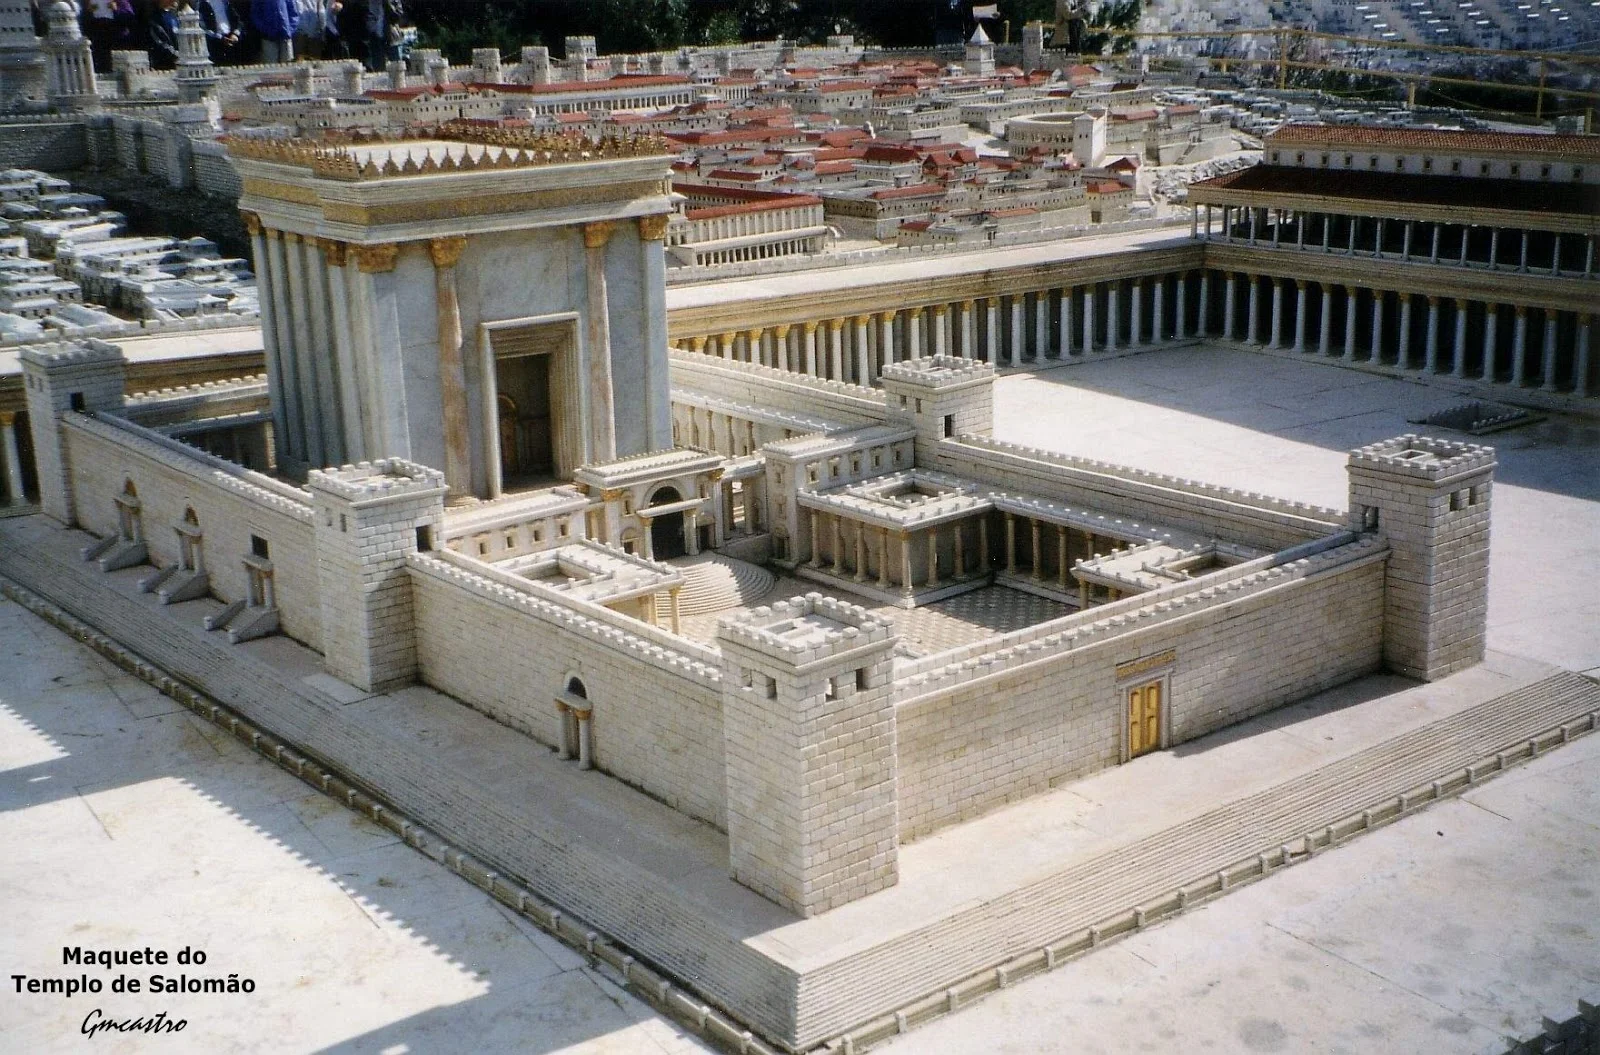 Maquete do templo de Salomão